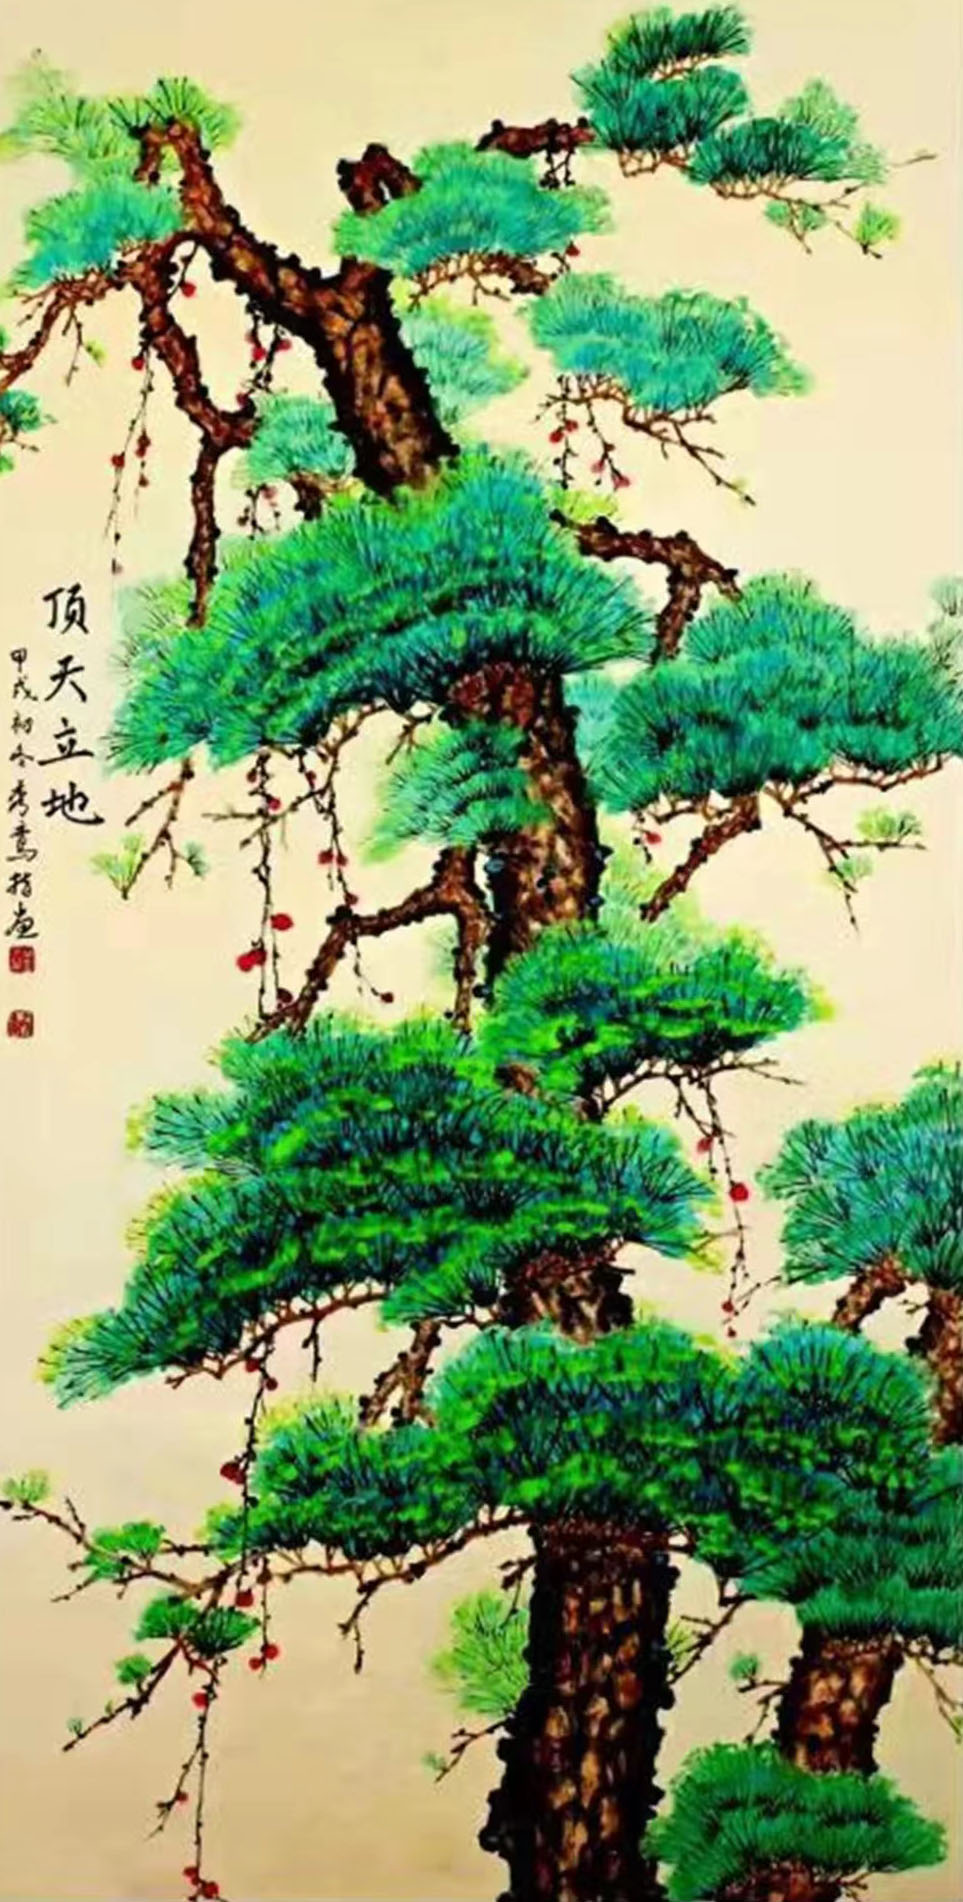 《飞龙在天 浓情端午》海内外华人艺术家共庆佳节书画展(图519)